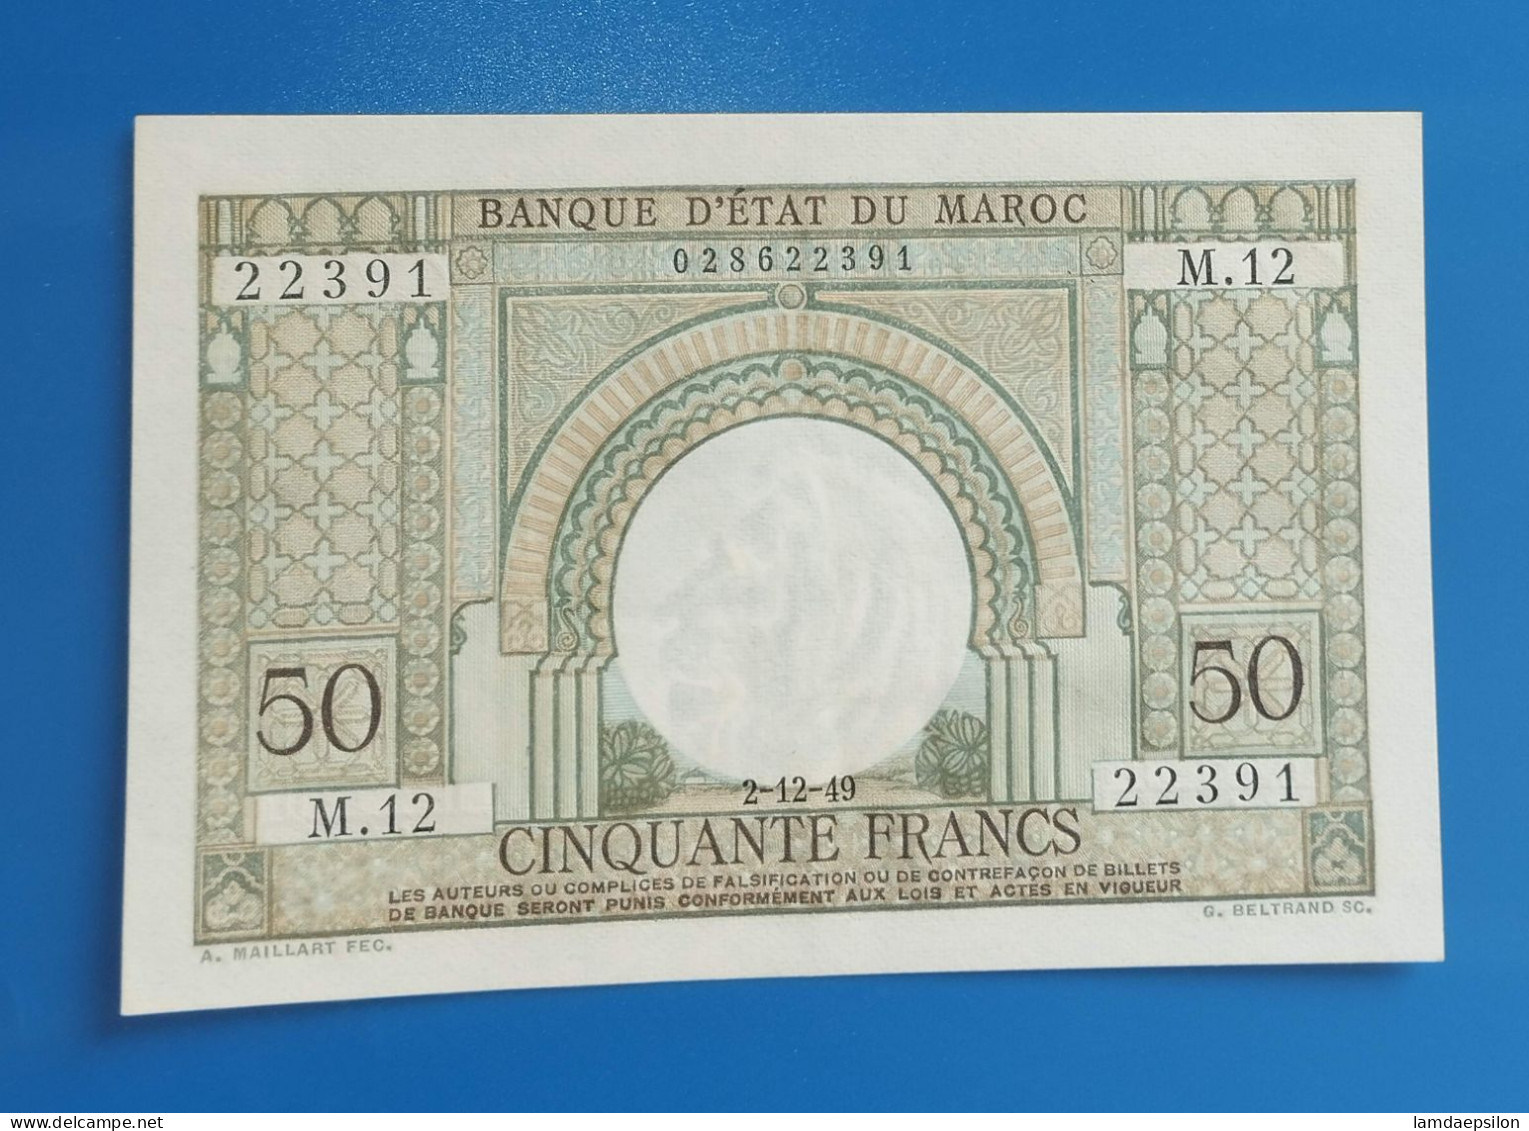 MAROC MOROCCO MARRUECOS MAROKKO BANQUE D'ETAT 50 FRANC 1949 AUNC - Marokko